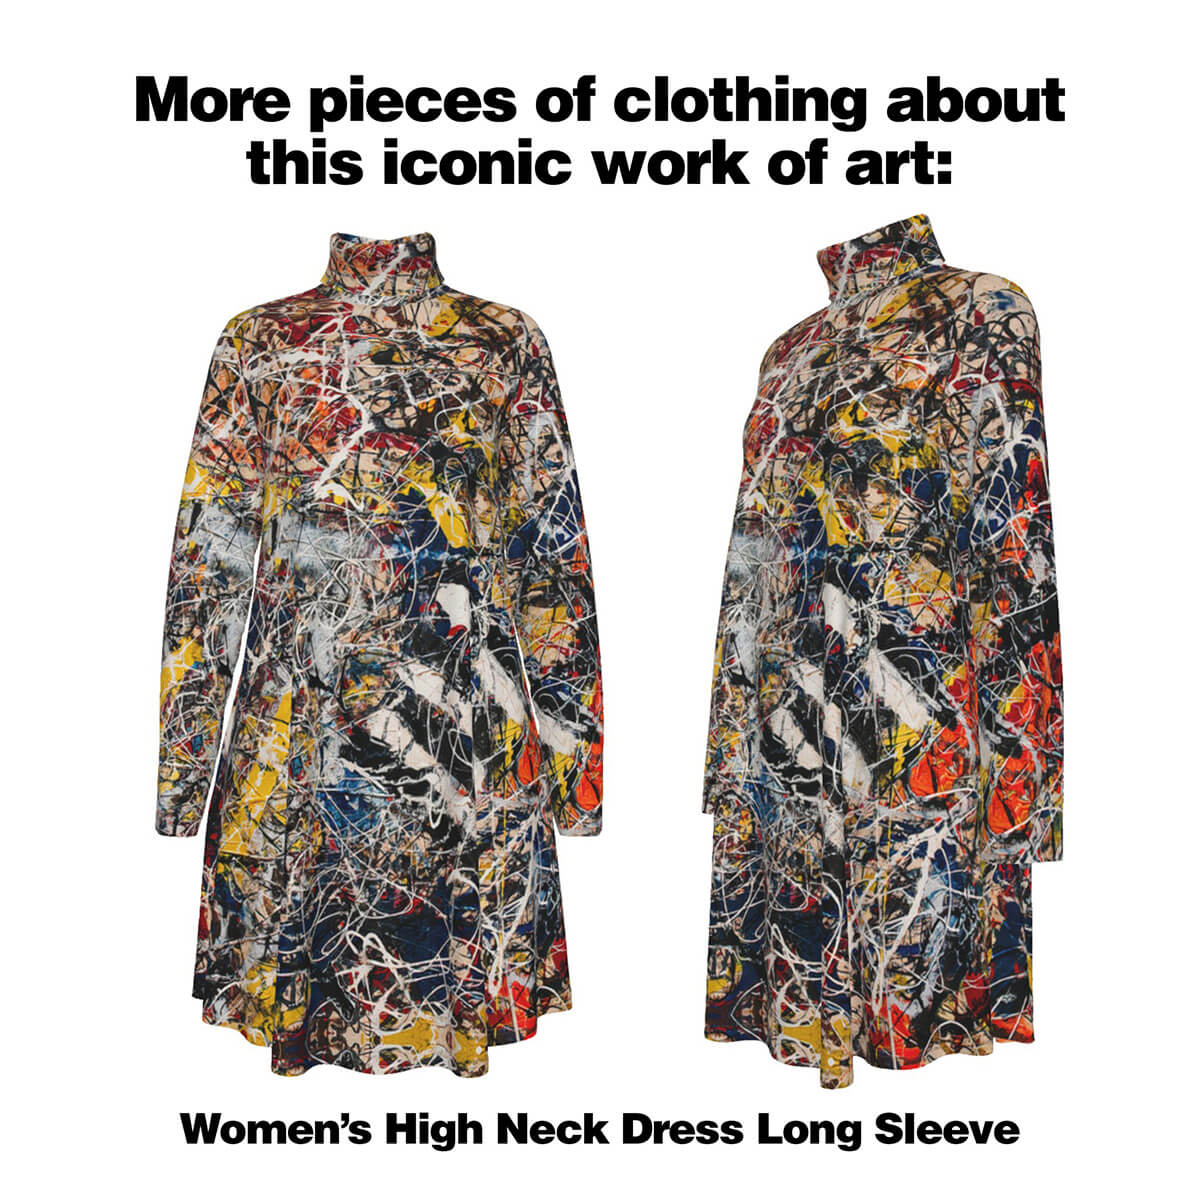 Hodvábny košeľový oblek Number 17A od Jacksona Pollocka